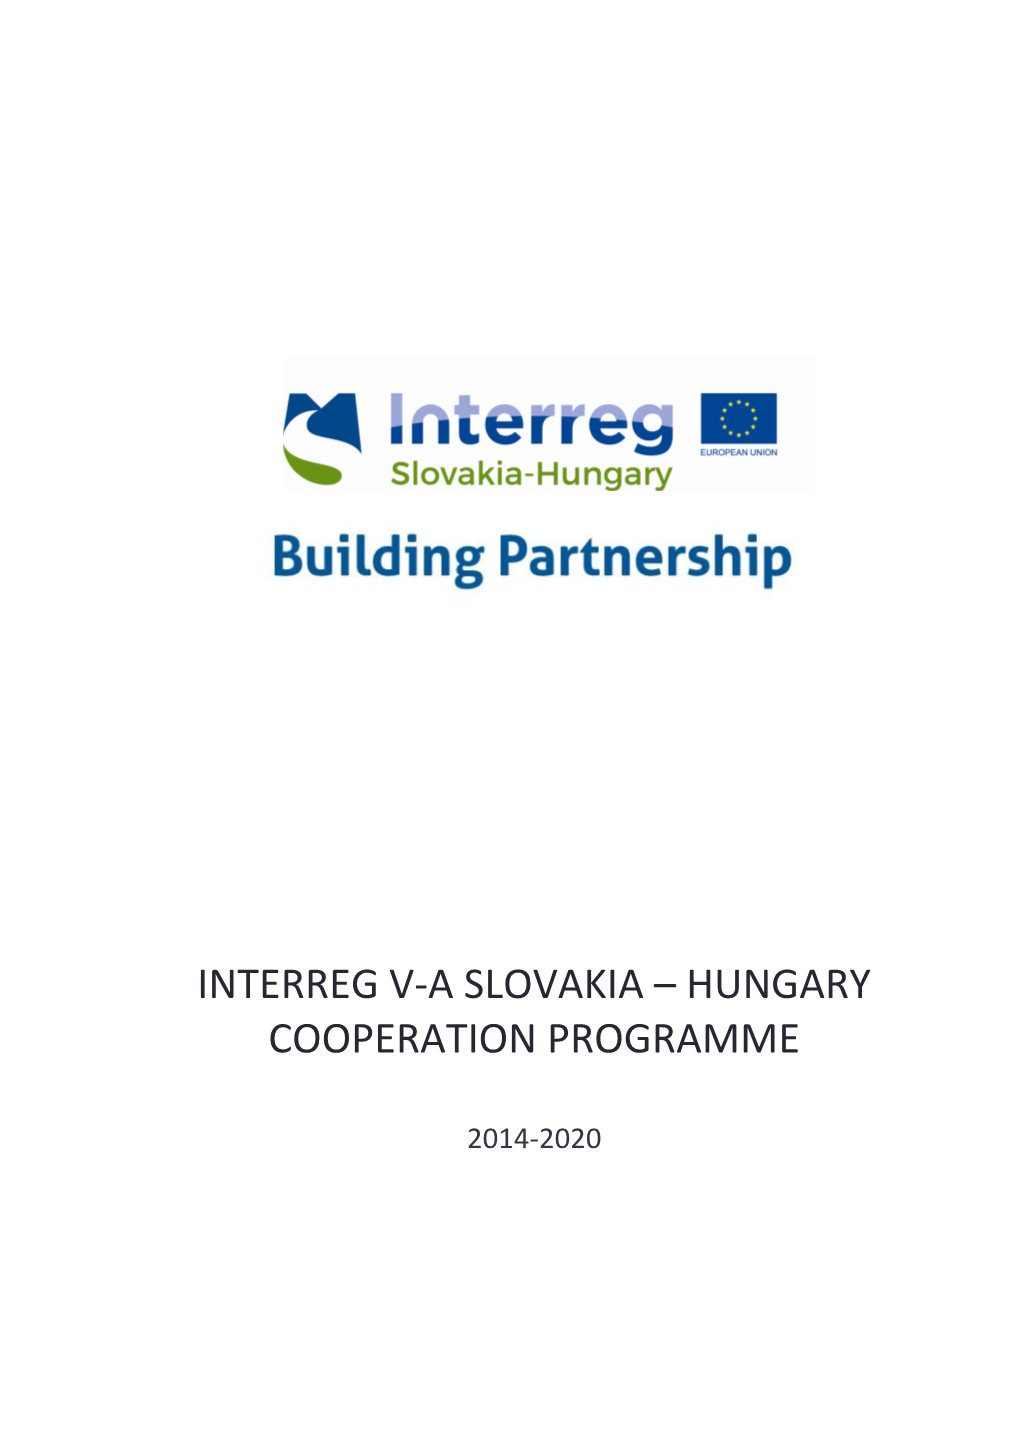 Interreg Va Slovakia